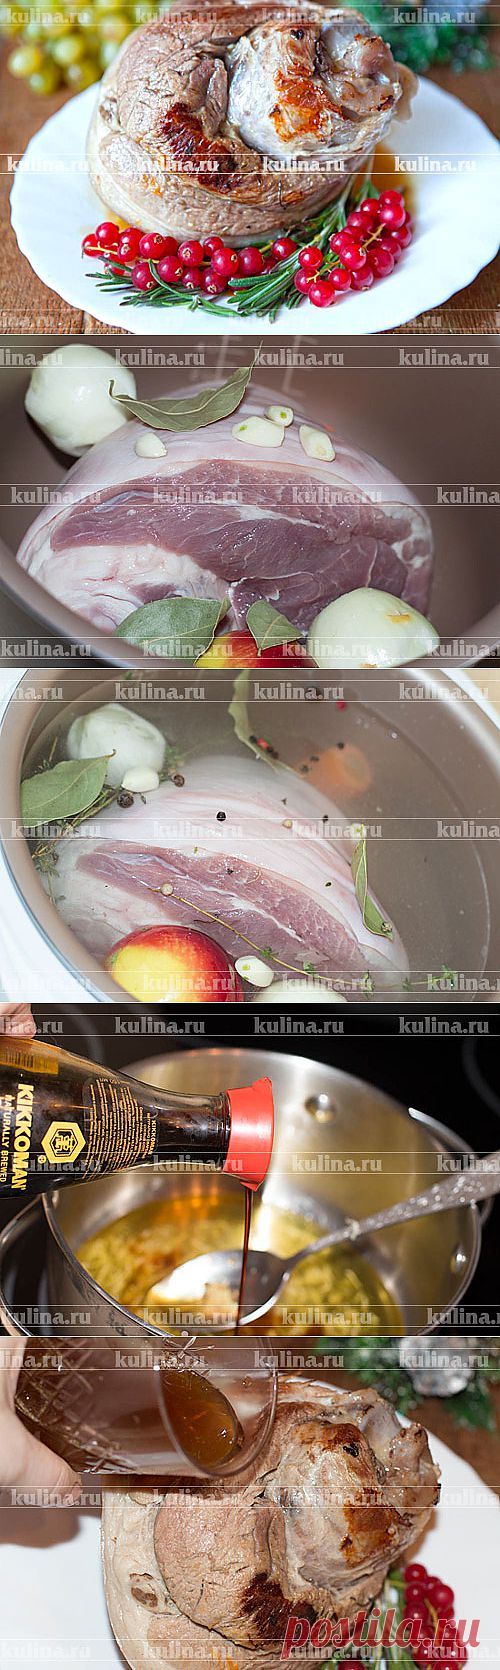 Рулька в мультиварке – рецепт приготовления с фото от Kulina.Ru